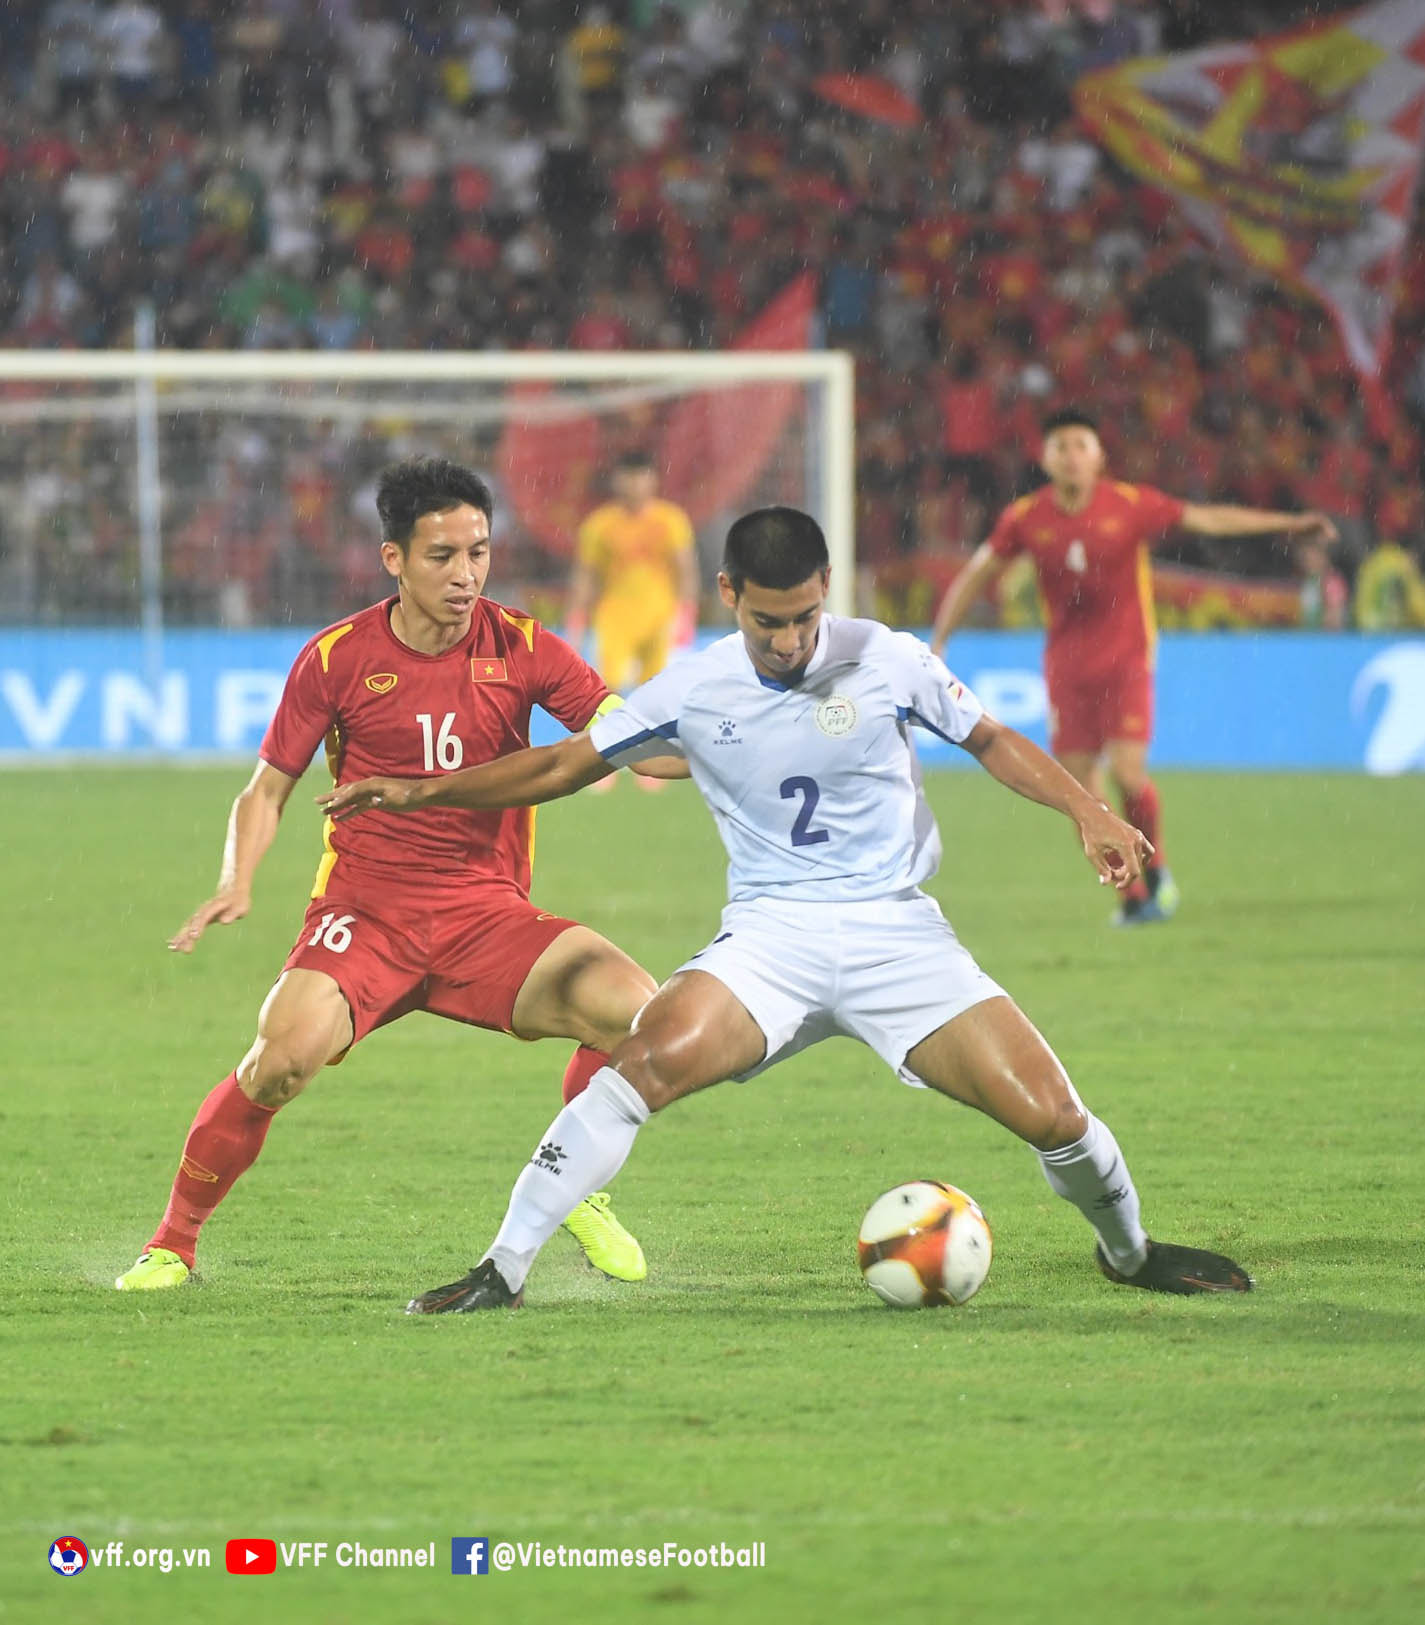 Các cầu thủ Philippines nhường hoàn toàn thế trận cho U23 Việt Nam, nhưng giữ đội hình phòng ngự rất chặt chẽ - Ảnh: VFF